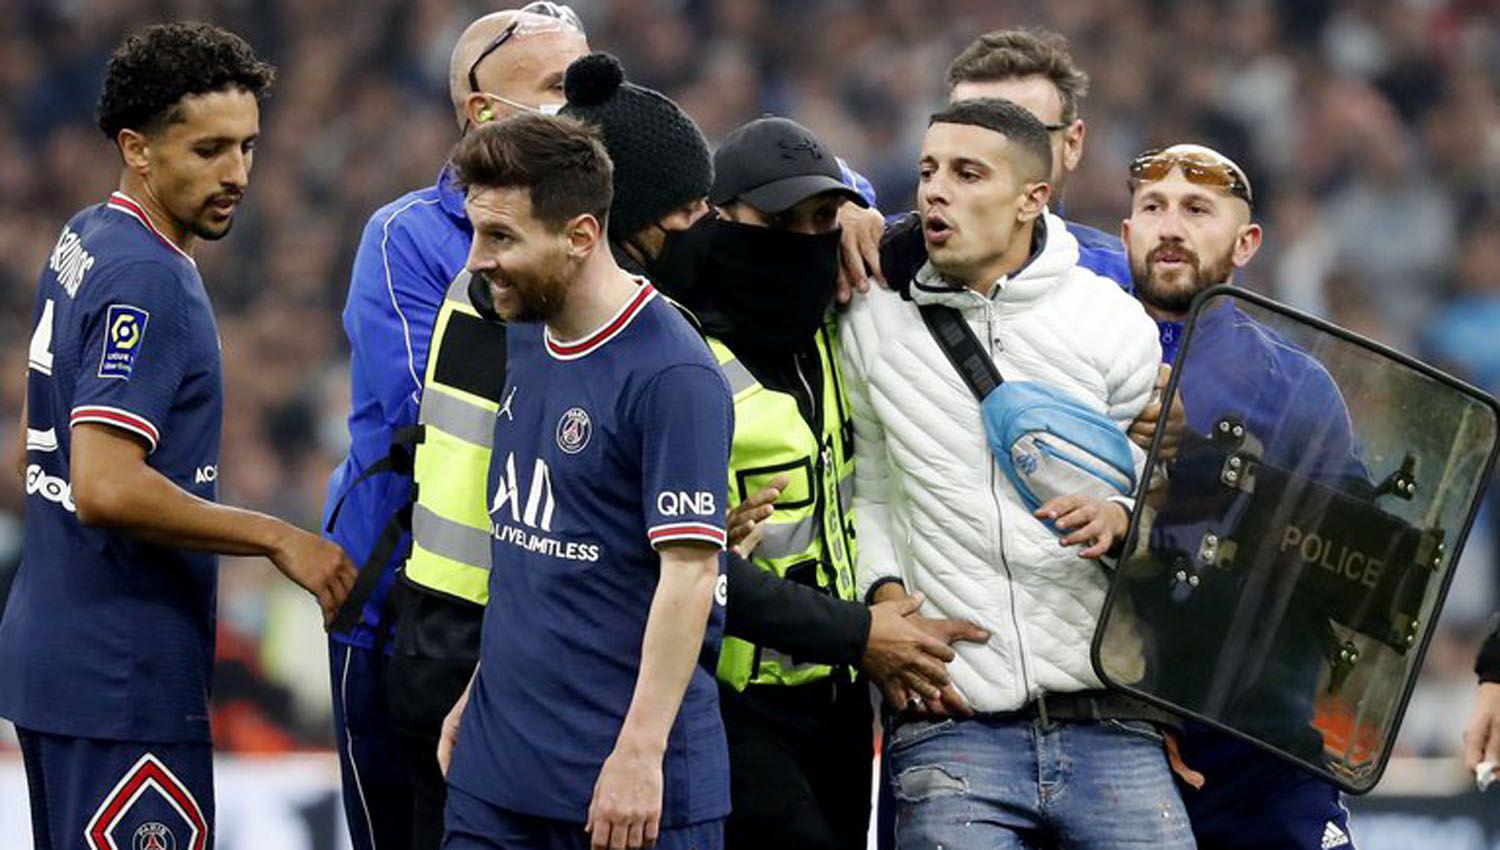 VIacuteDEO- Un hincha del Marsella invadioacute el campo de juego y le cortoacute un ataque a Messi